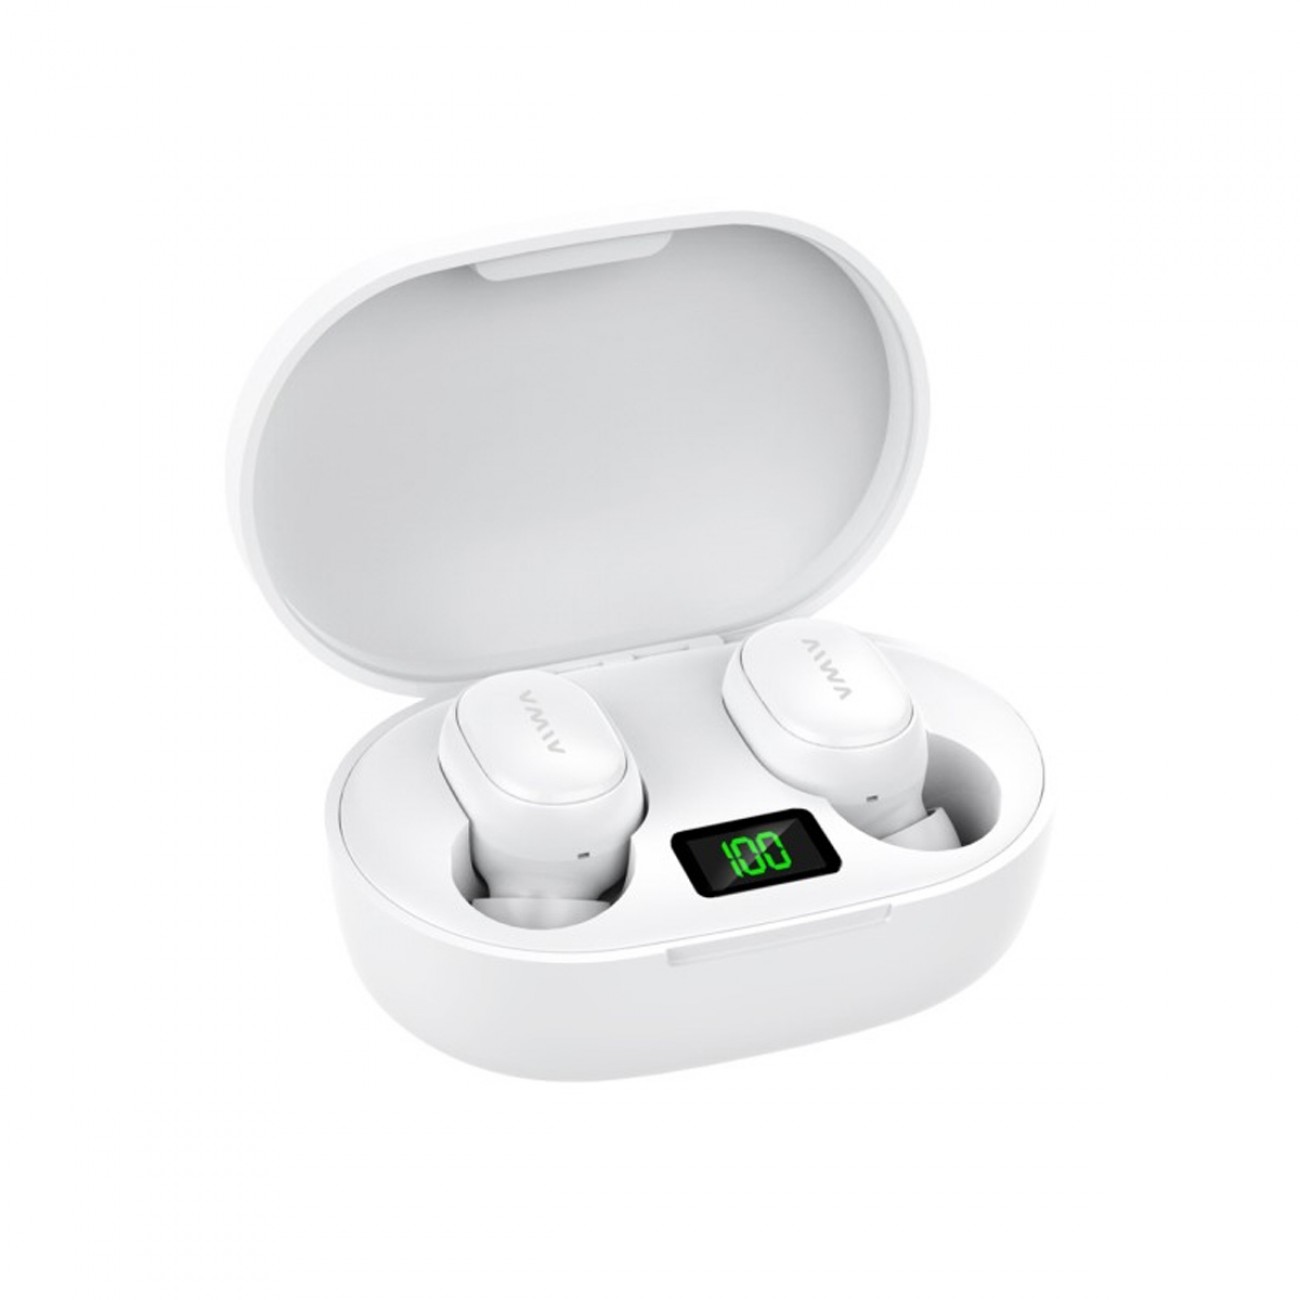 Auriculares In-ear Inalámbricos Bluetooth Aiwa 106n